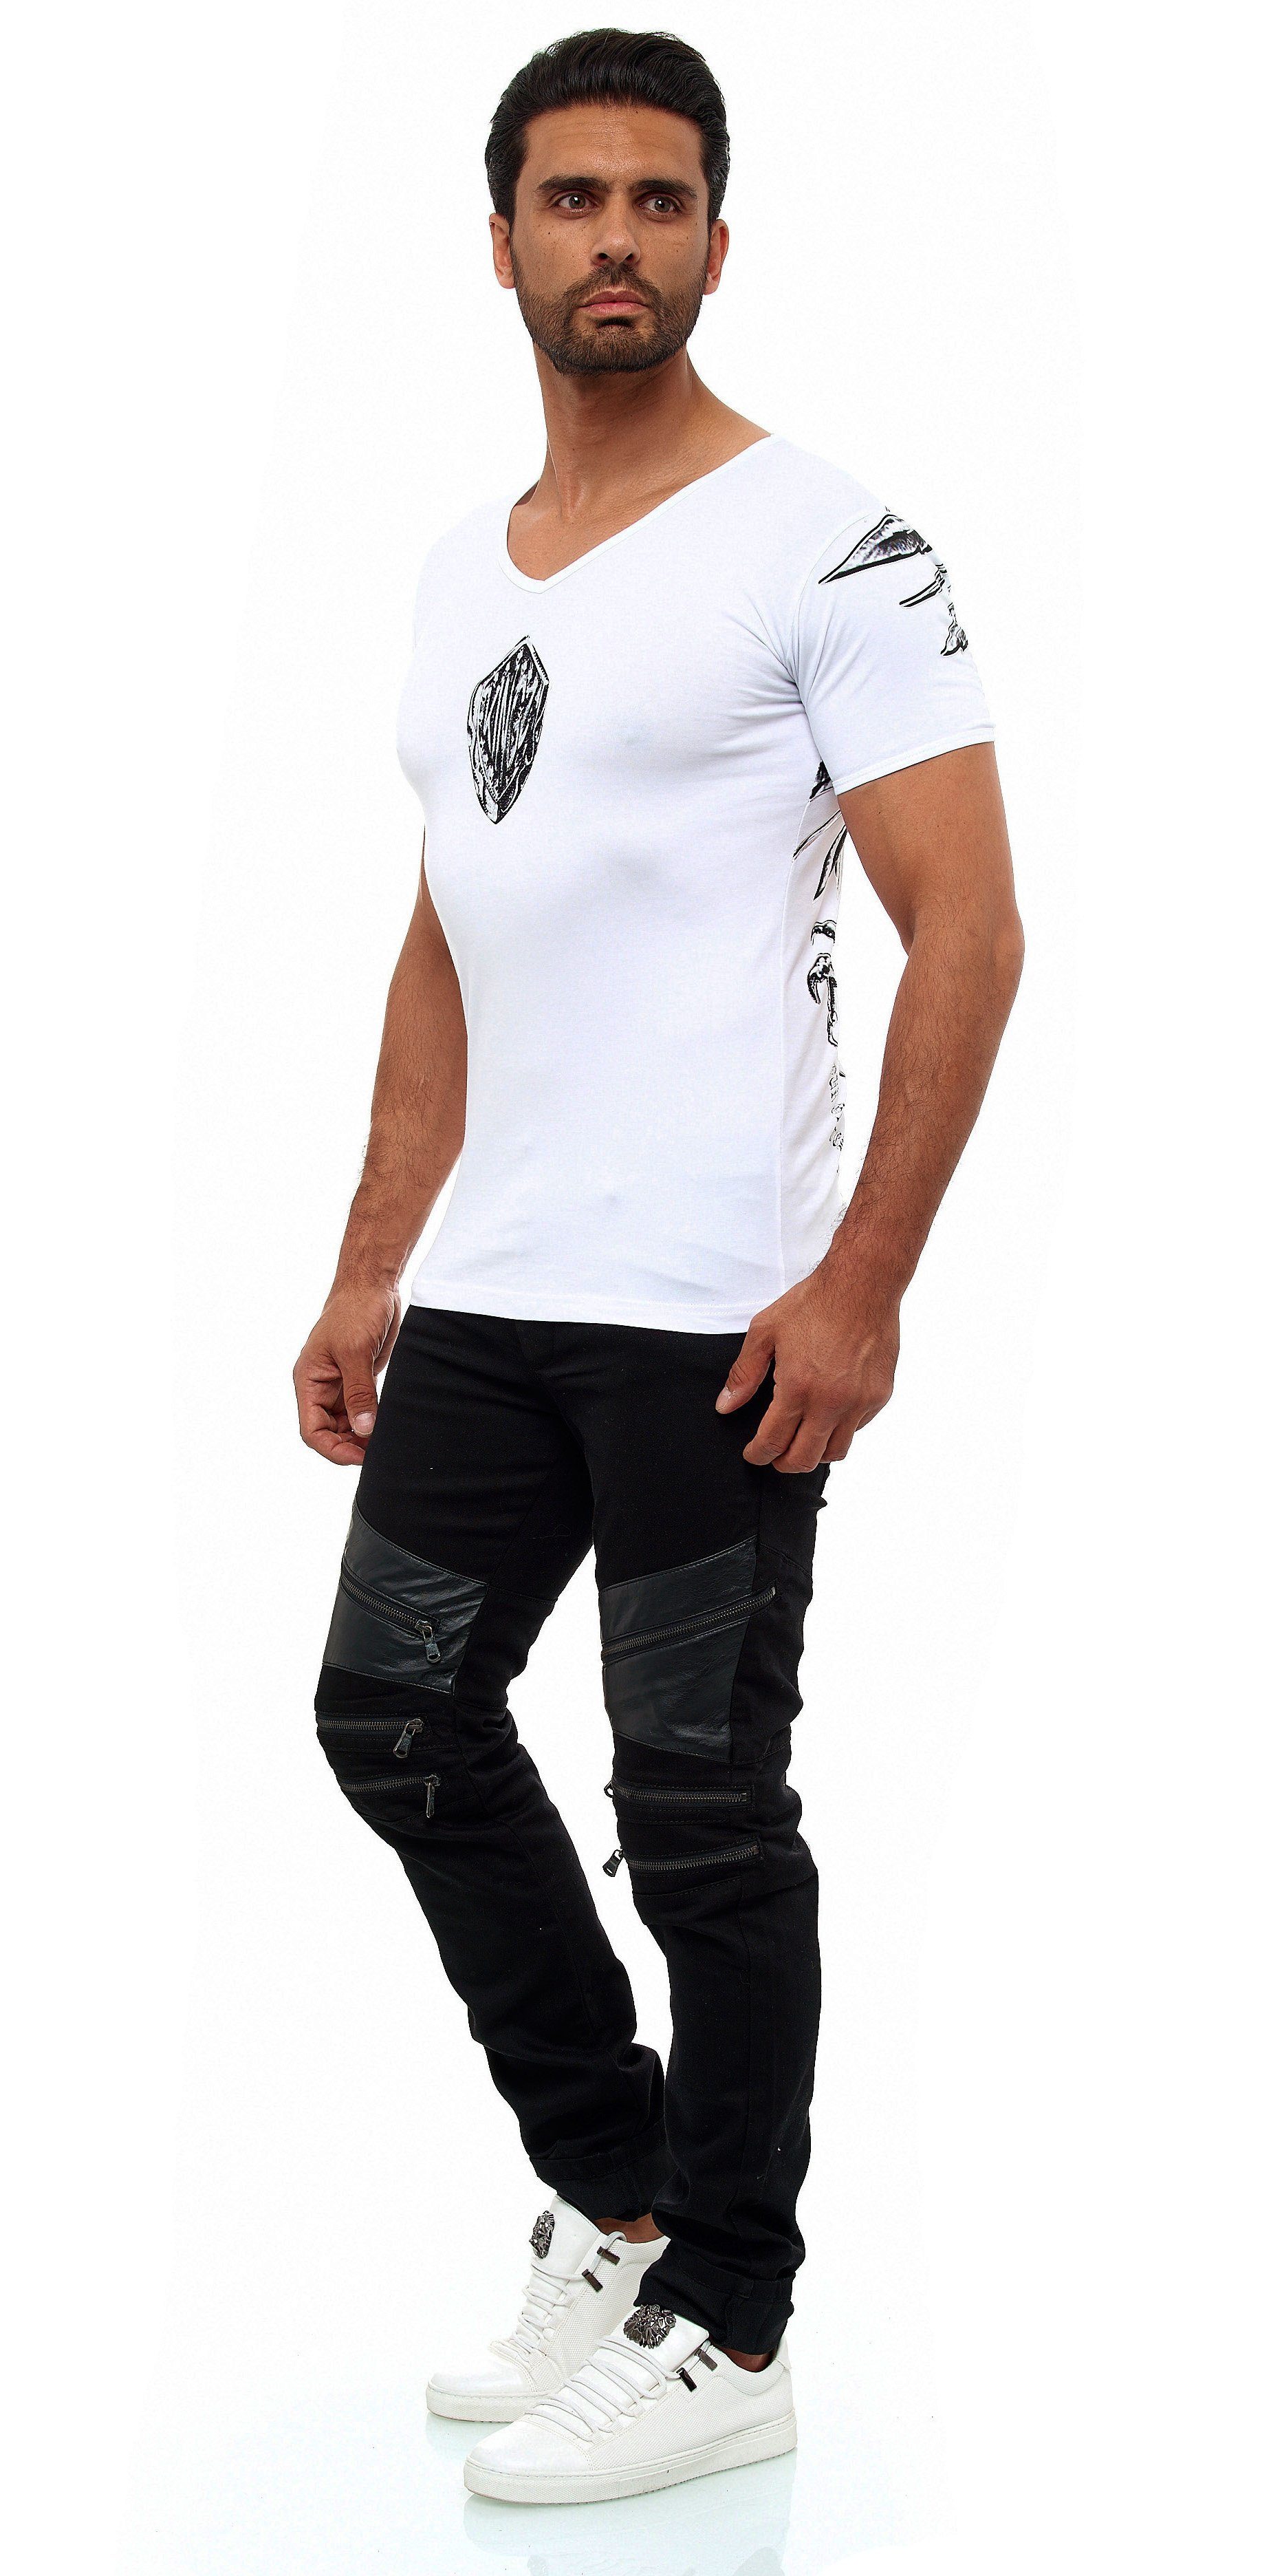 KINGZ Adler-Print mit weiß-silberfarben T-Shirt ausgefallenem